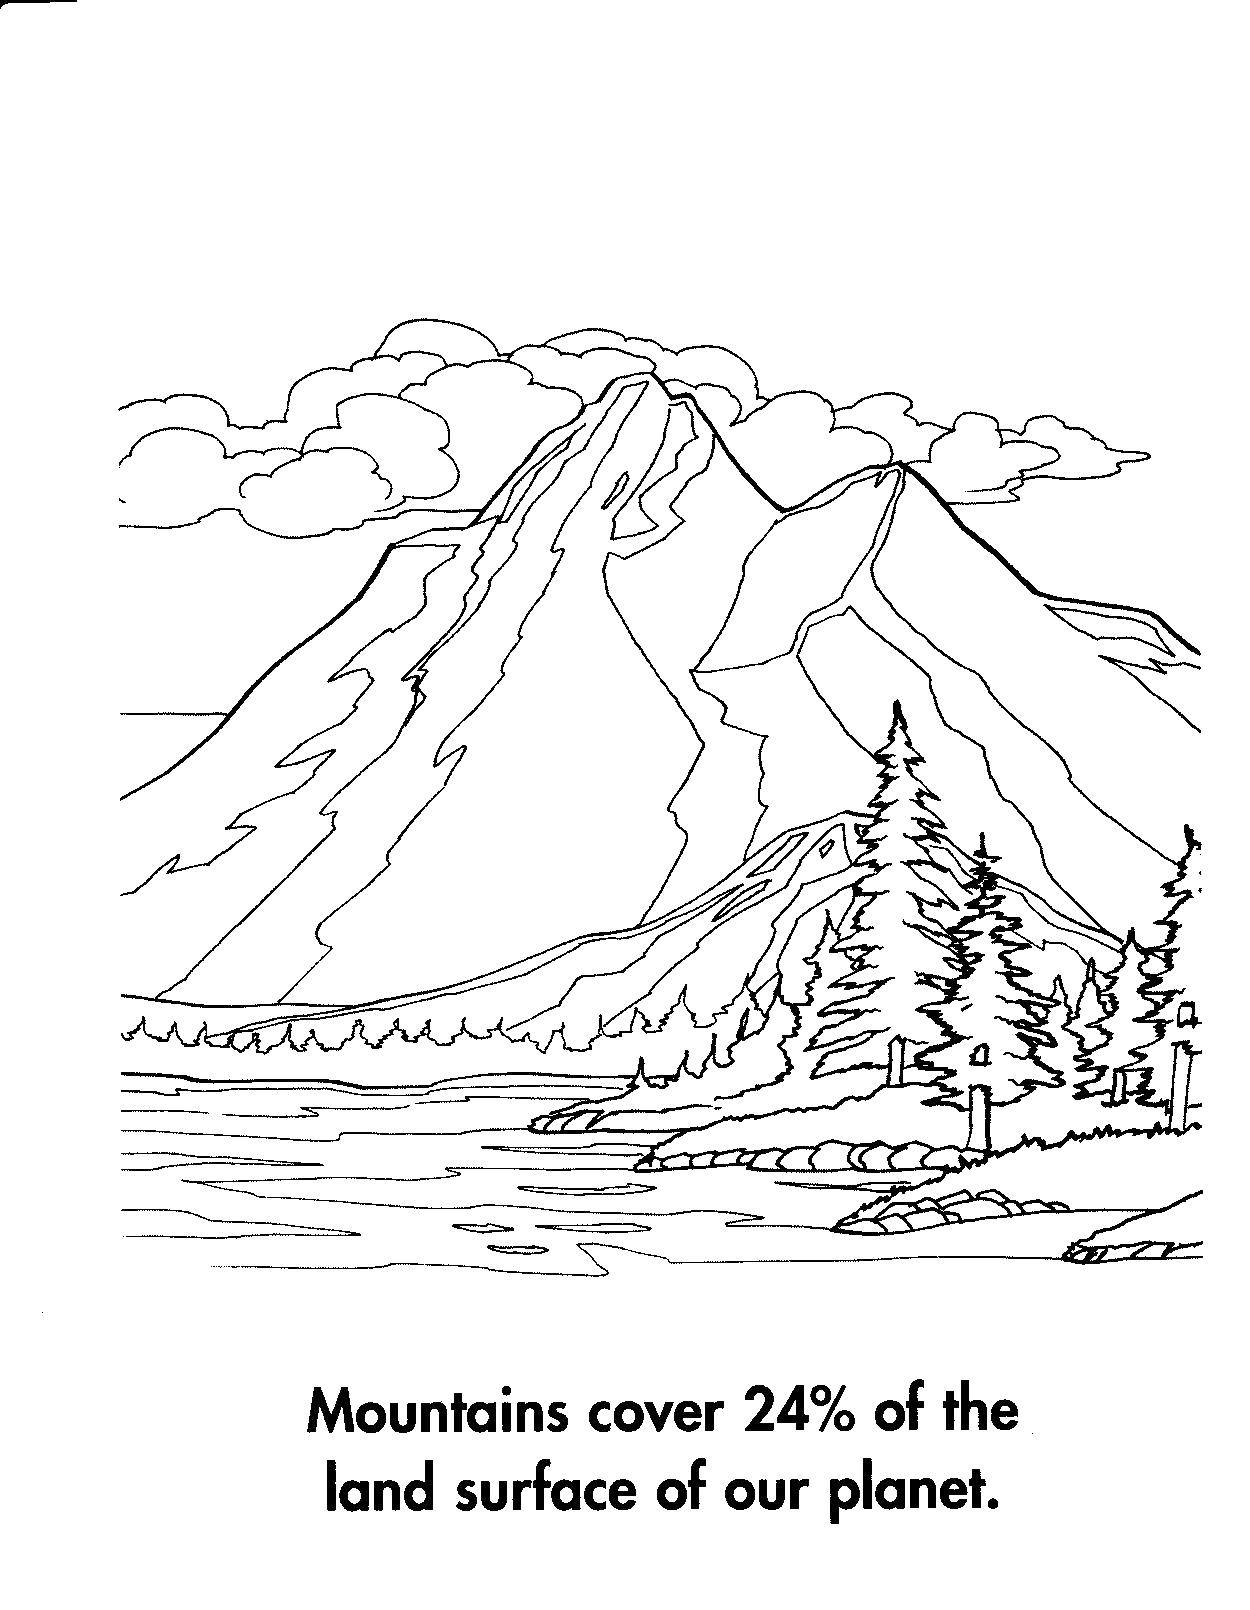 Название: Раскраска Скалы занимают 24% земли на планете. Категория: Природа. Теги: Природа, лес, горы, река.